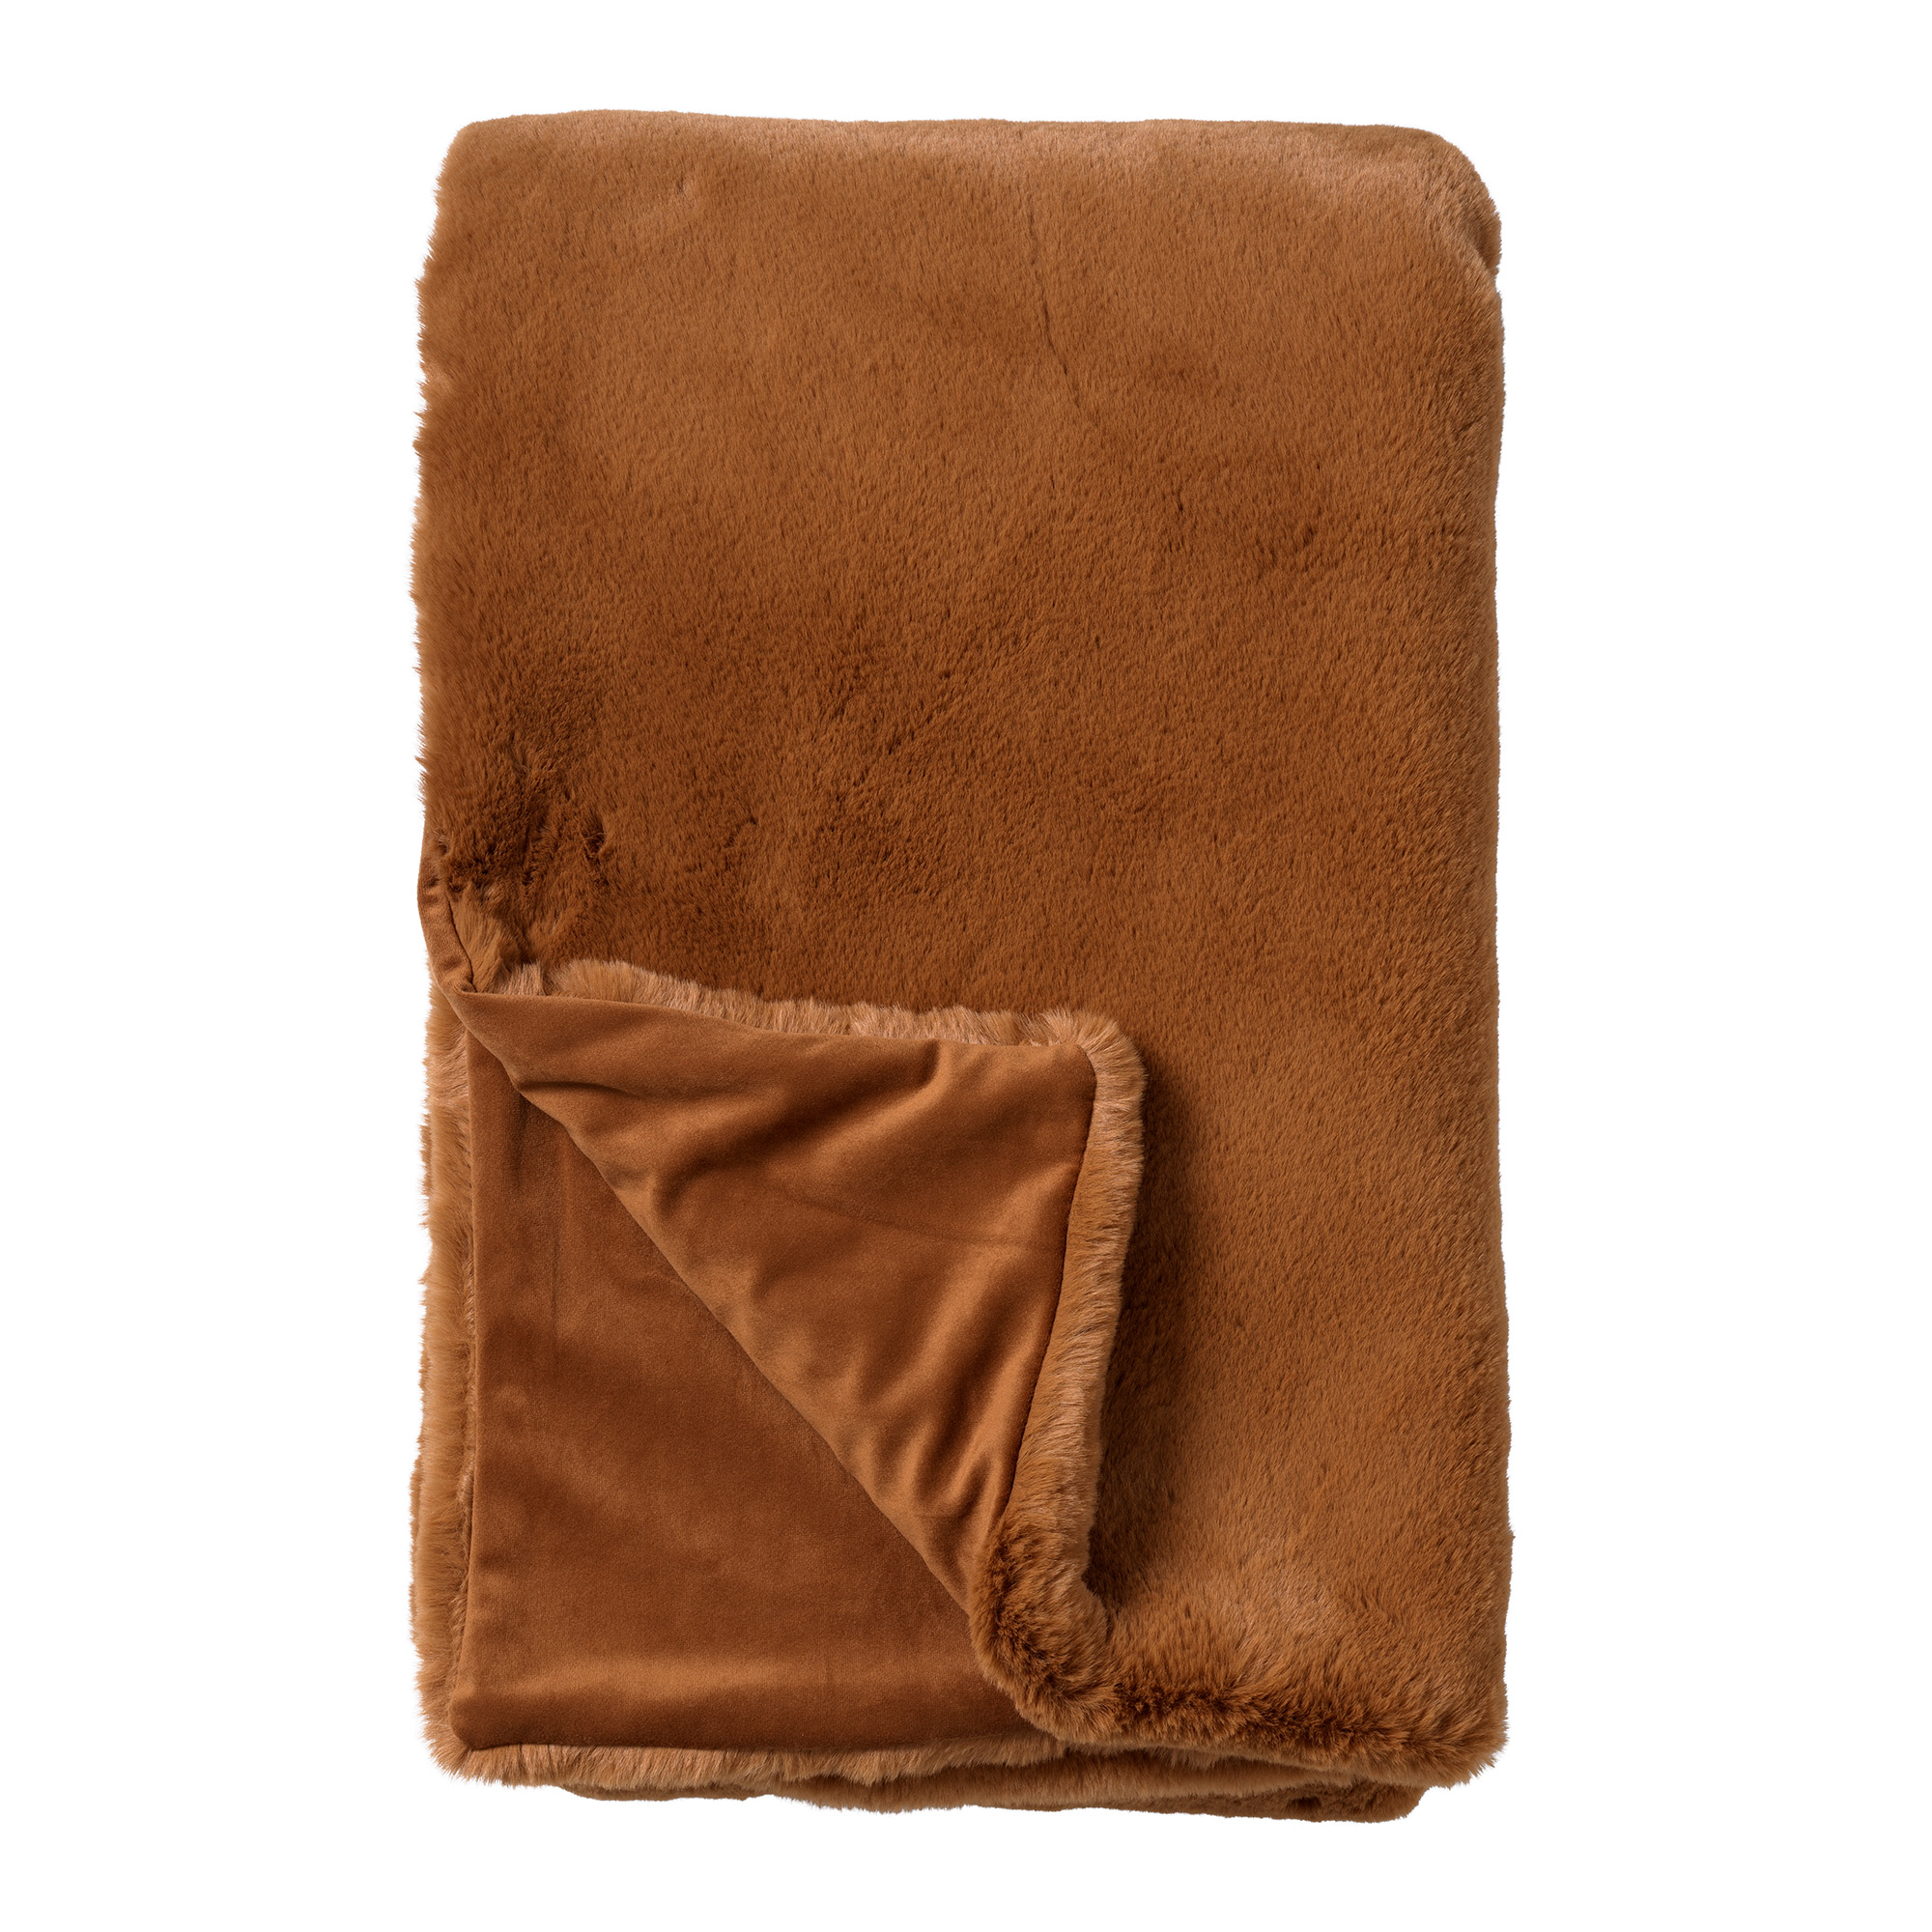 ZINZI - Plaid 140x180 cm - bontlook - effen kleur - Tobacco Brown - bruin